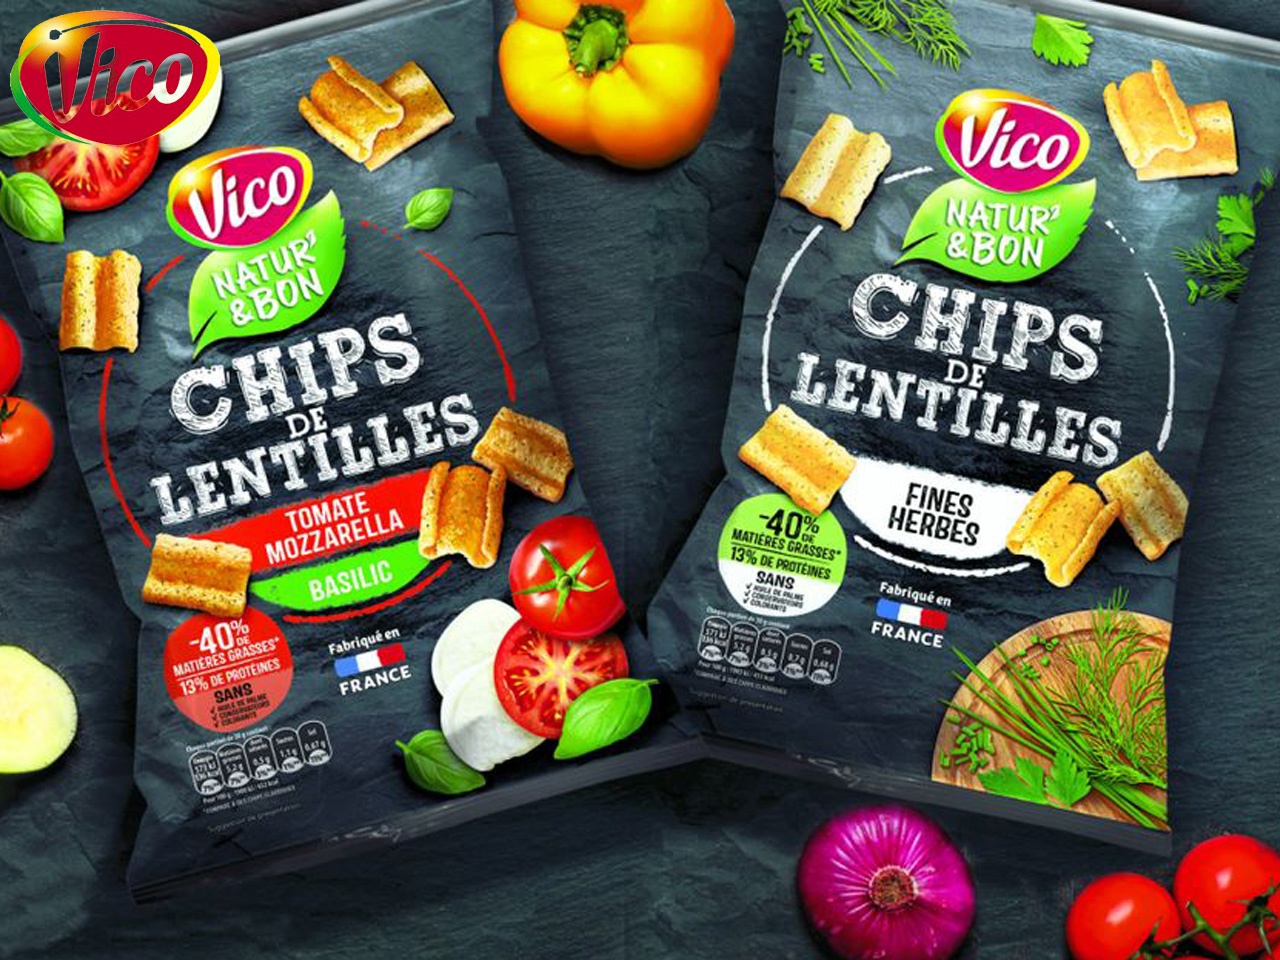 Vico lance des chips aux lentilles, une alternative naturellement gourmande !